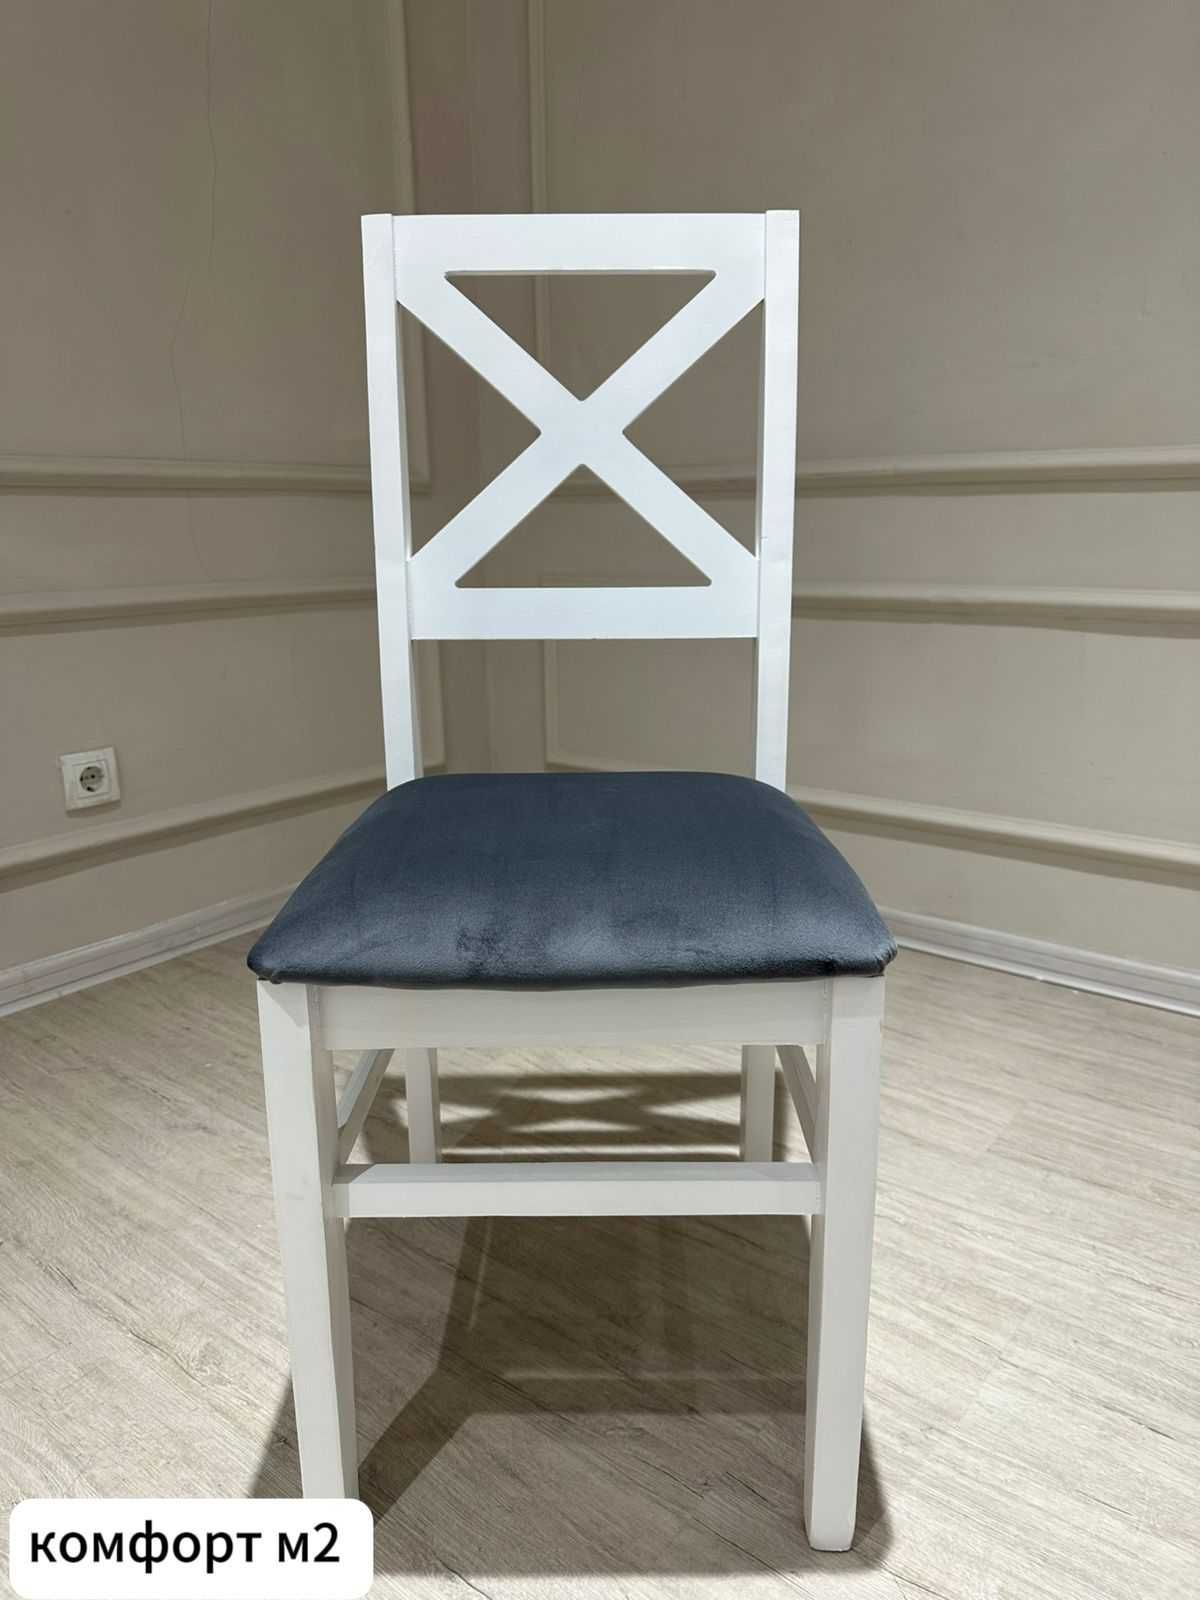 Обновите свой интерьер с нашей элегантной коллекцией столов и стульев!